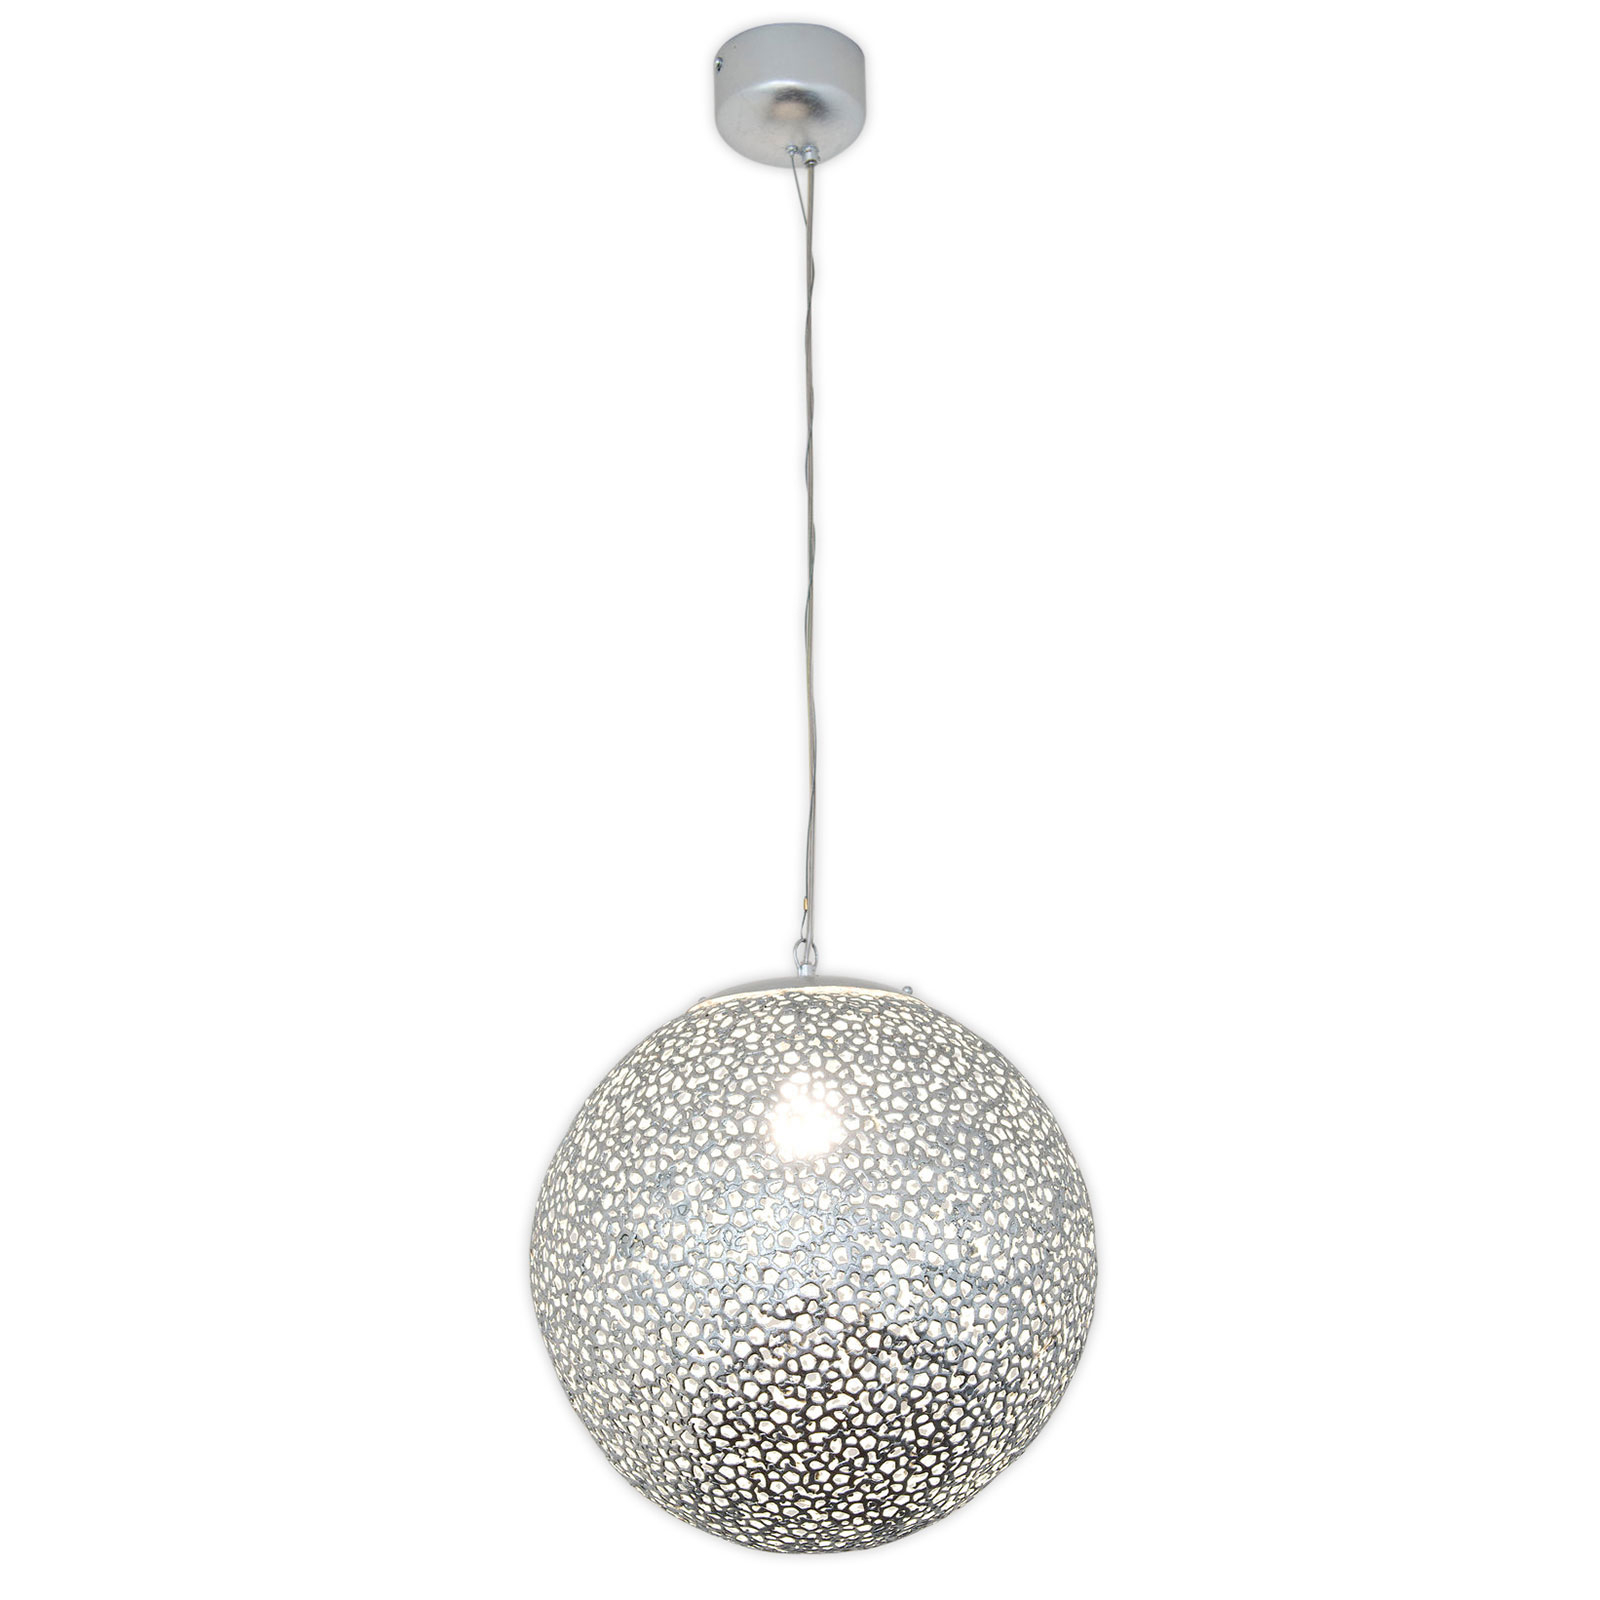 Utopistico hængelampe i sølv, Ø 40 cm